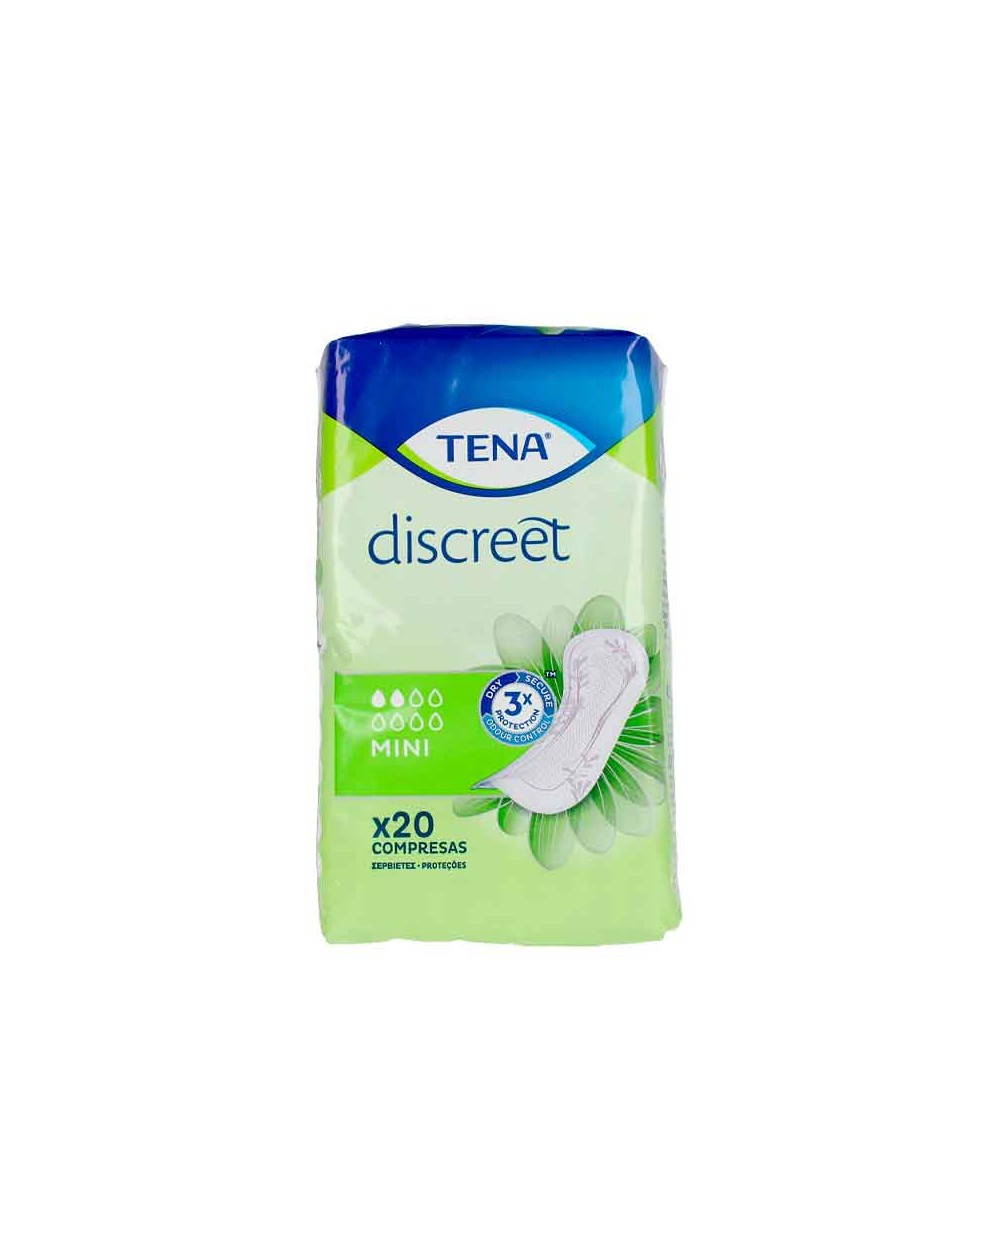 TENA LADY DISCREET compresa incontinencia mini 24 uds